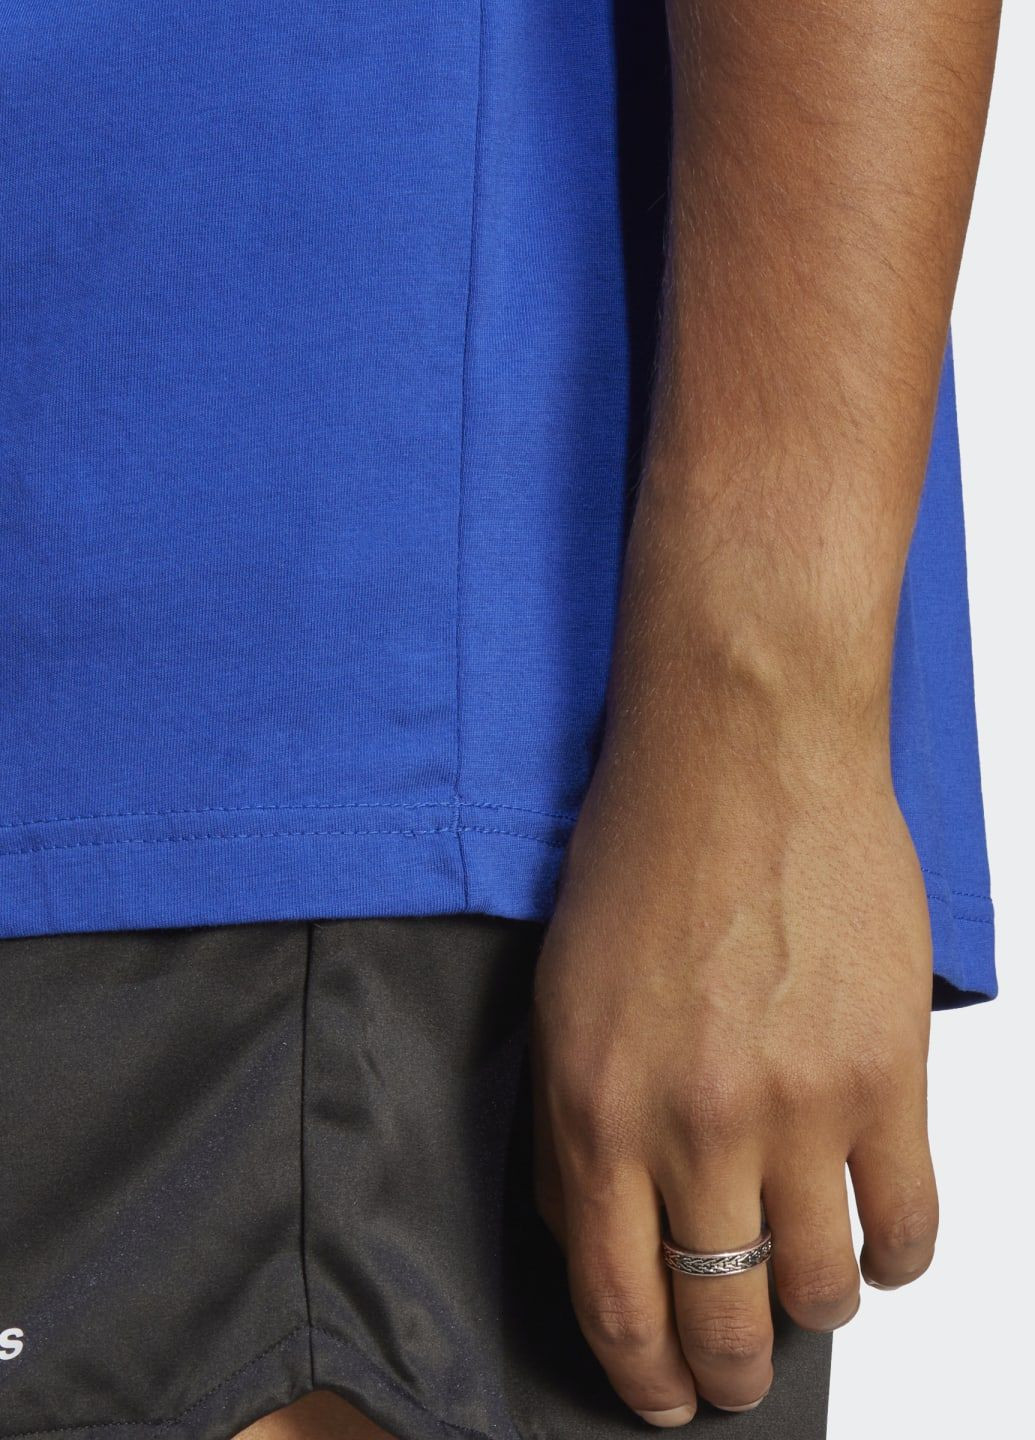 Синяя футболка с вышитым логотипом essentials adidas